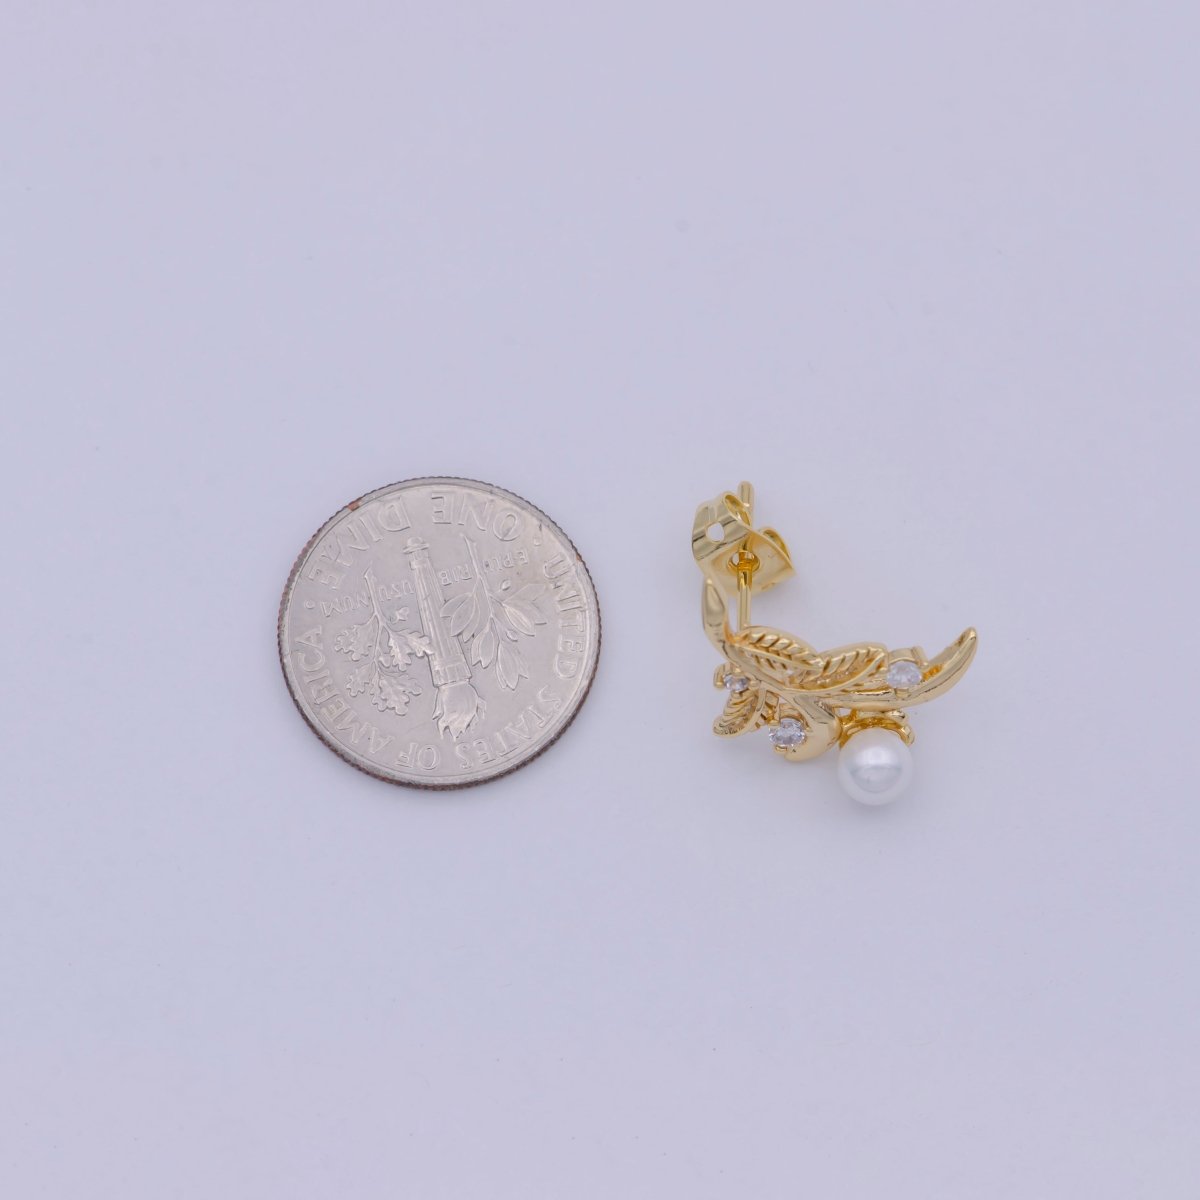 Gold Tree Branch Leaf Stud earrings • Pearl Earrings Jewelry T-357 - DLUXCA